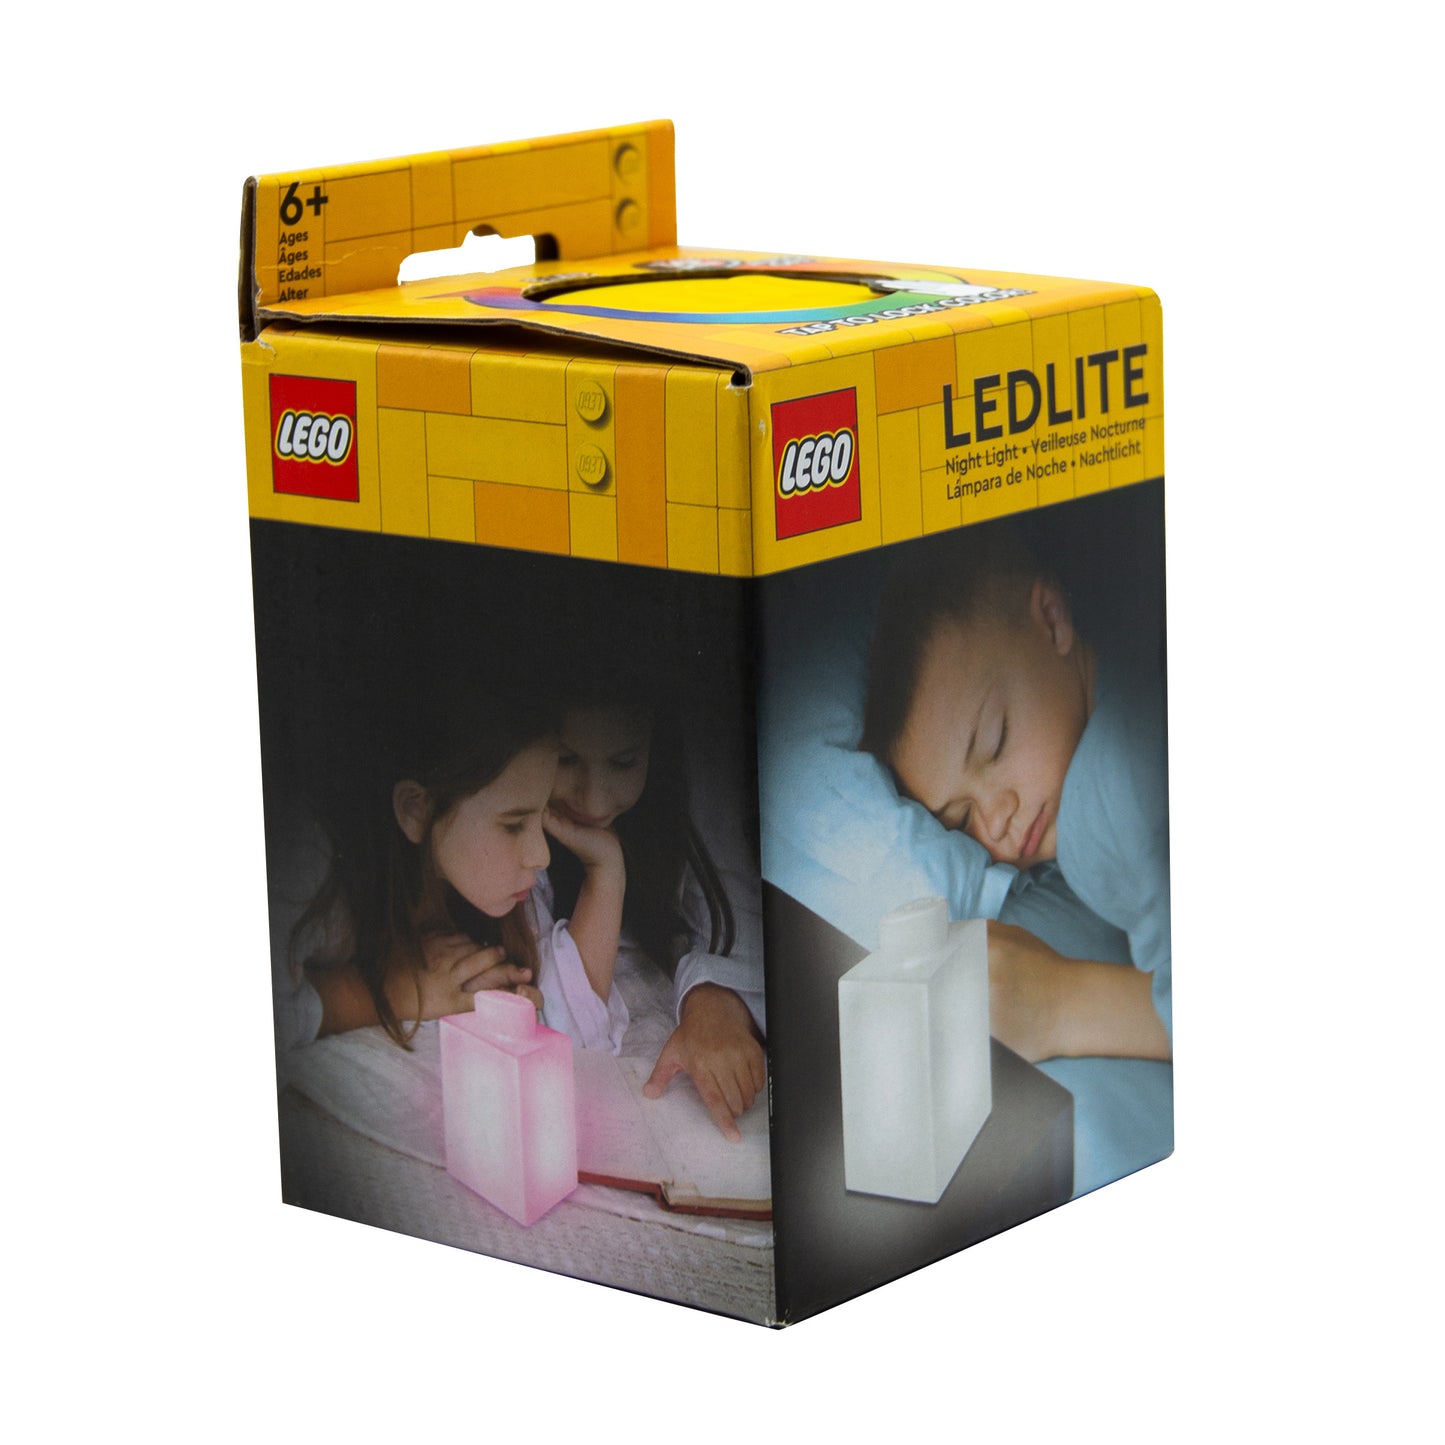 IQ レゴ アイコニック 1×1のレゴブロック形 柔らかシリコン タッチ式 ランプ 黄色 (LP42)